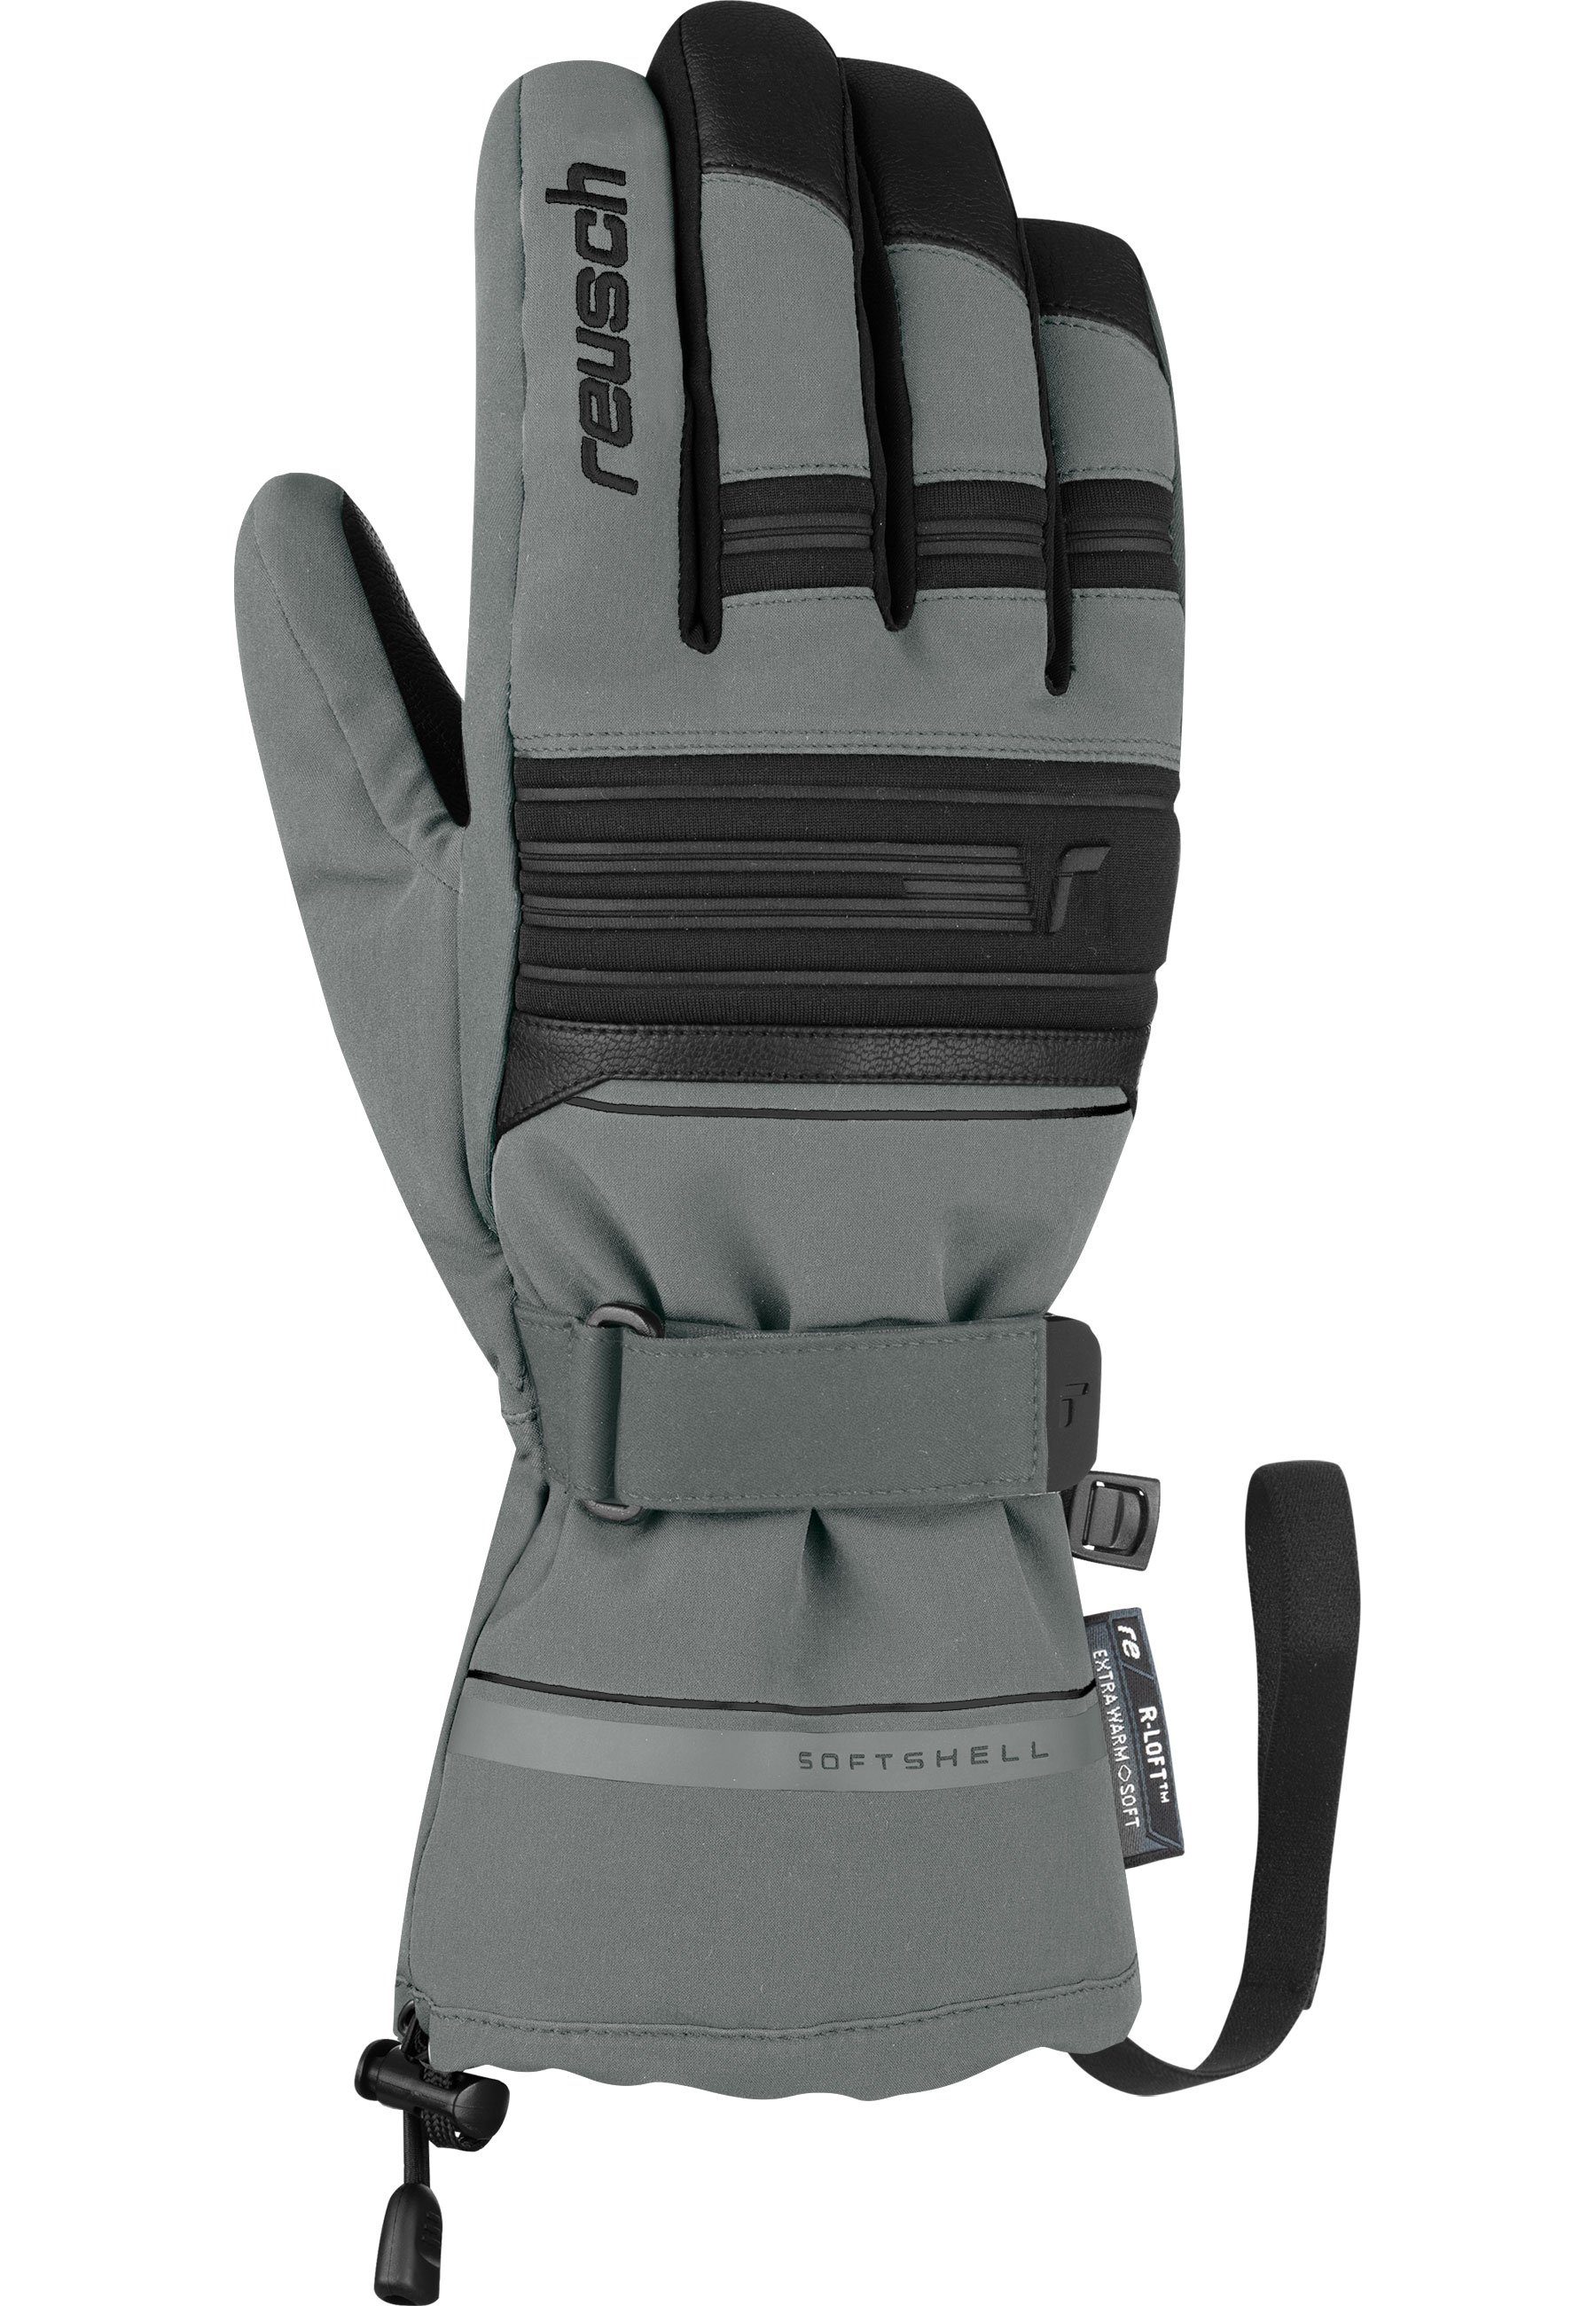 Reusch Skihandschuhe Kondor R-TEX® XT in und wasserdichtem grau-schwarz Design atmungsaktivem